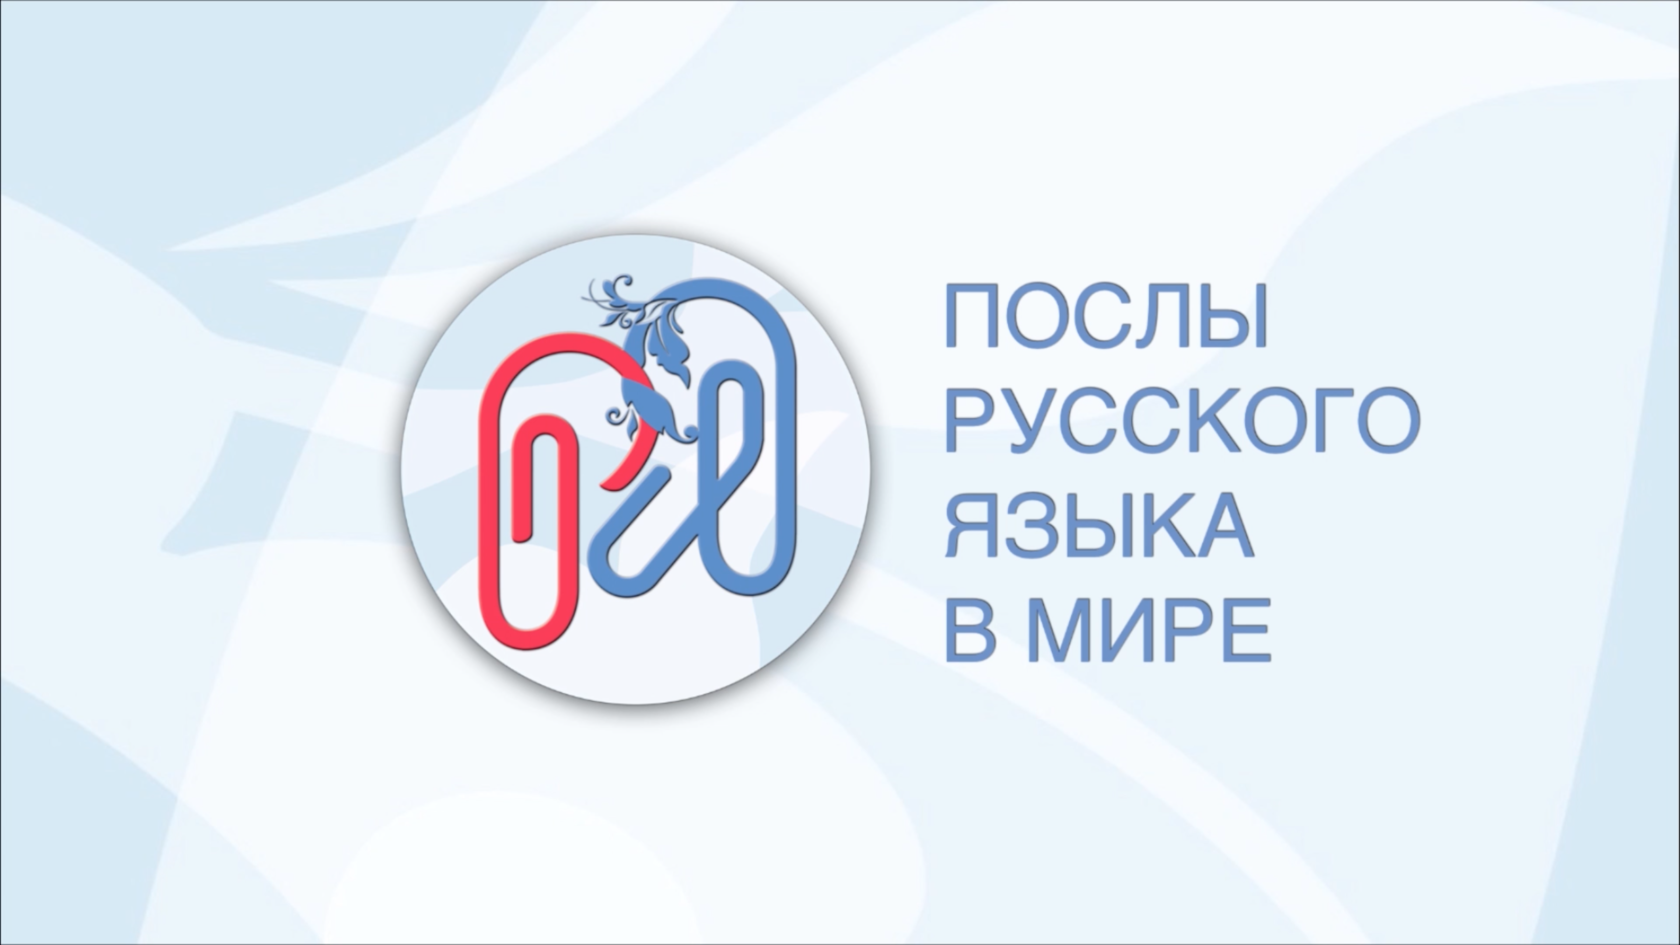 Открыт прием заявок на международную волонтерскую программу «Послы русского языка в мире»